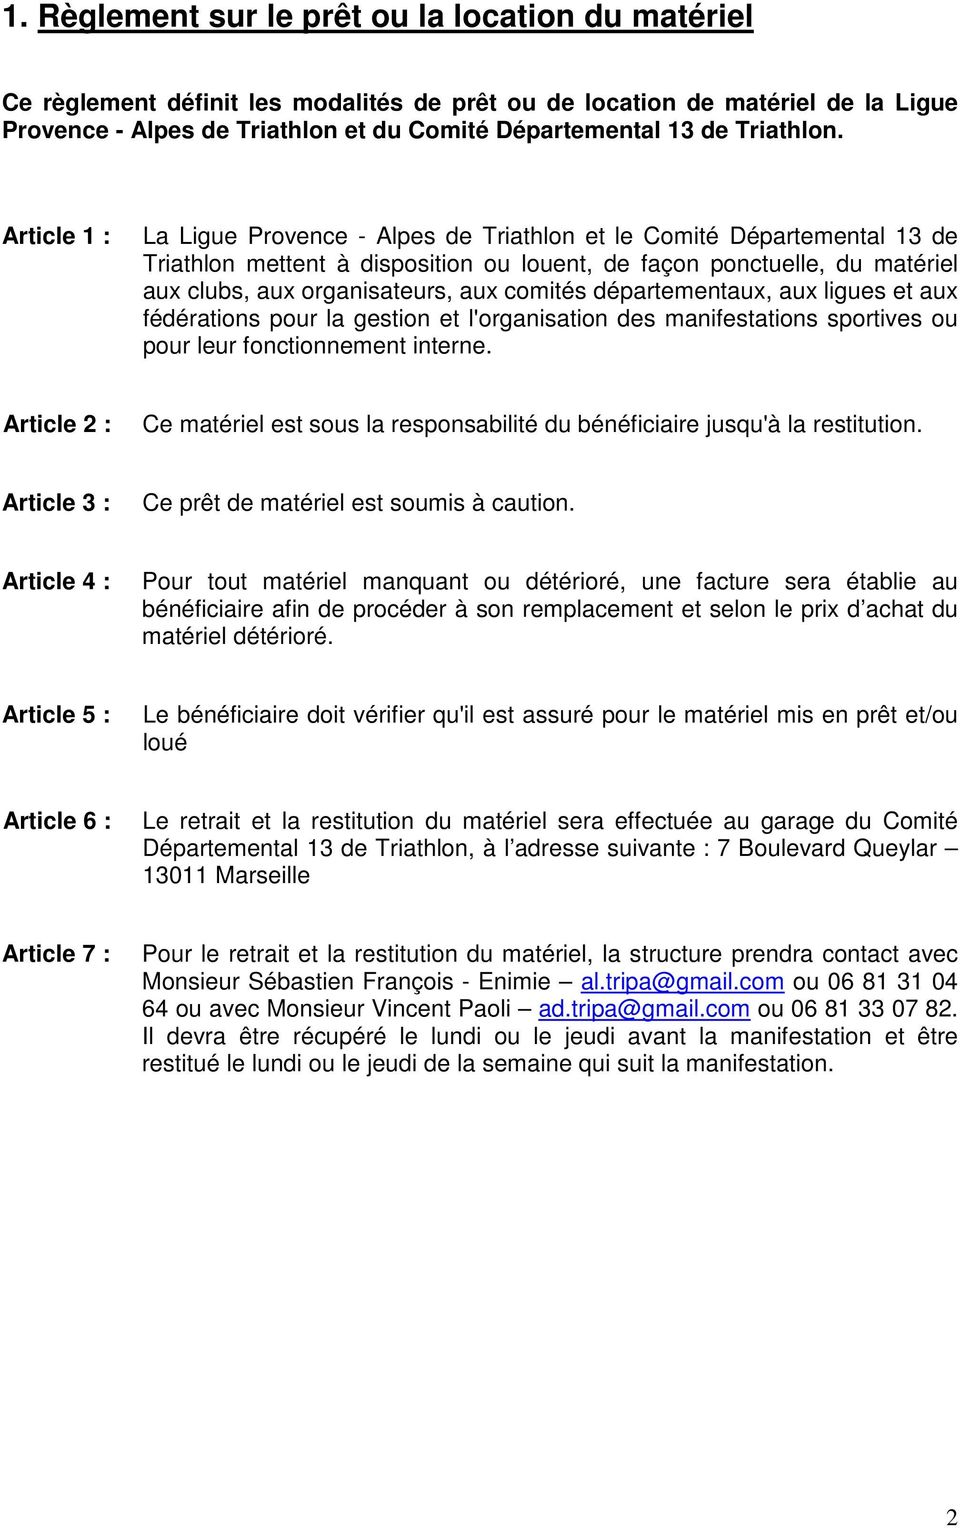 Article 1 : La Ligue Provence - Alpes de Triathlon et le Comité Départemental 13 de Triathlon mettent à disposition ou louent, de façon ponctuelle, du matériel aux clubs, aux organisateurs, aux